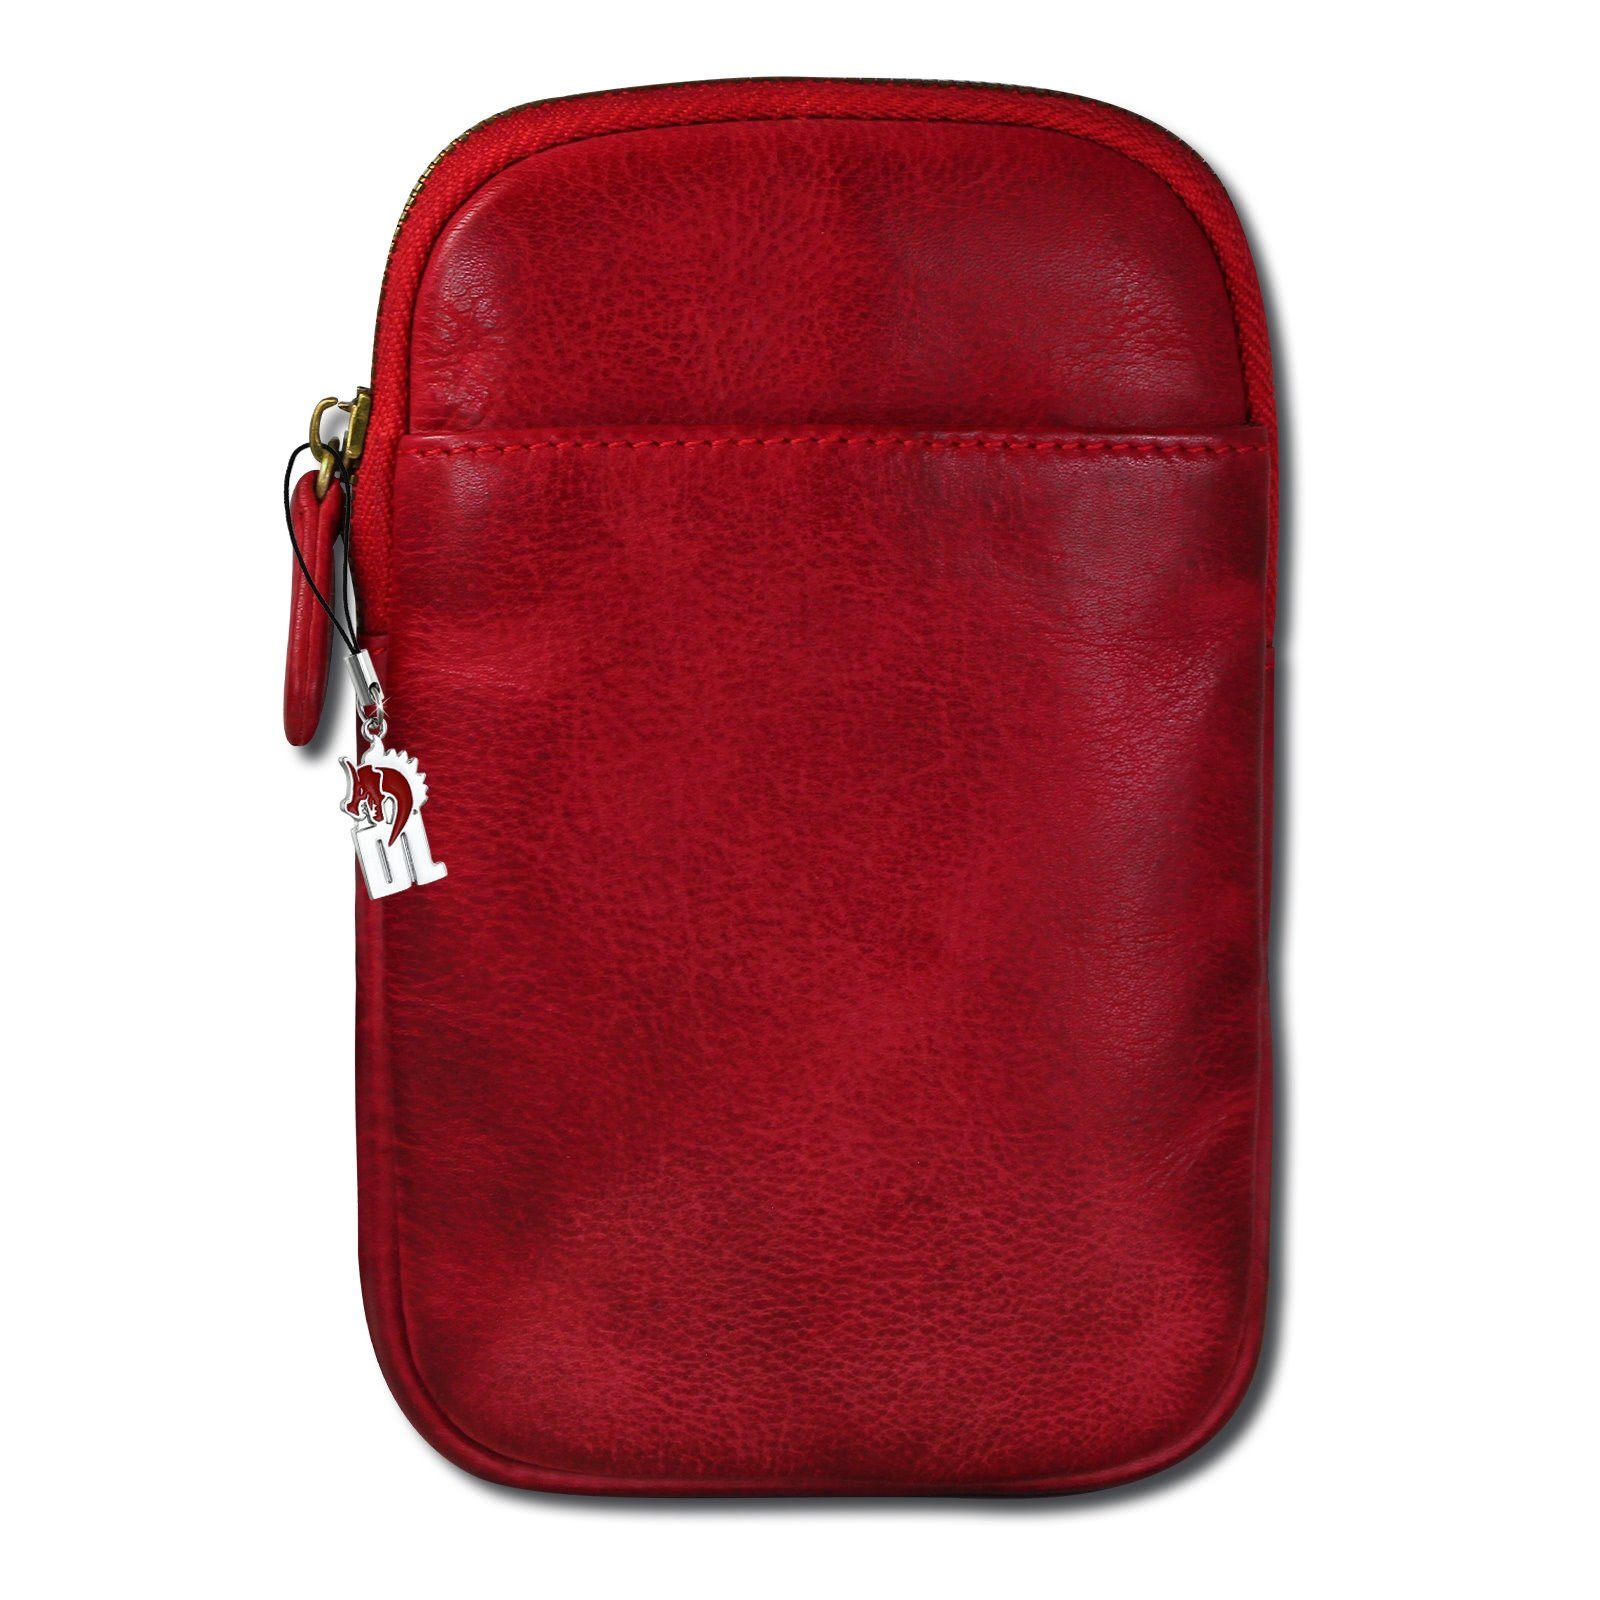 DrachenLeder Handtasche Damen Tasche rot DrachenLeder in ca. Damen, Tasche aus Herren (Handtasche), Handtasche Breite 13cm Echtleder rot